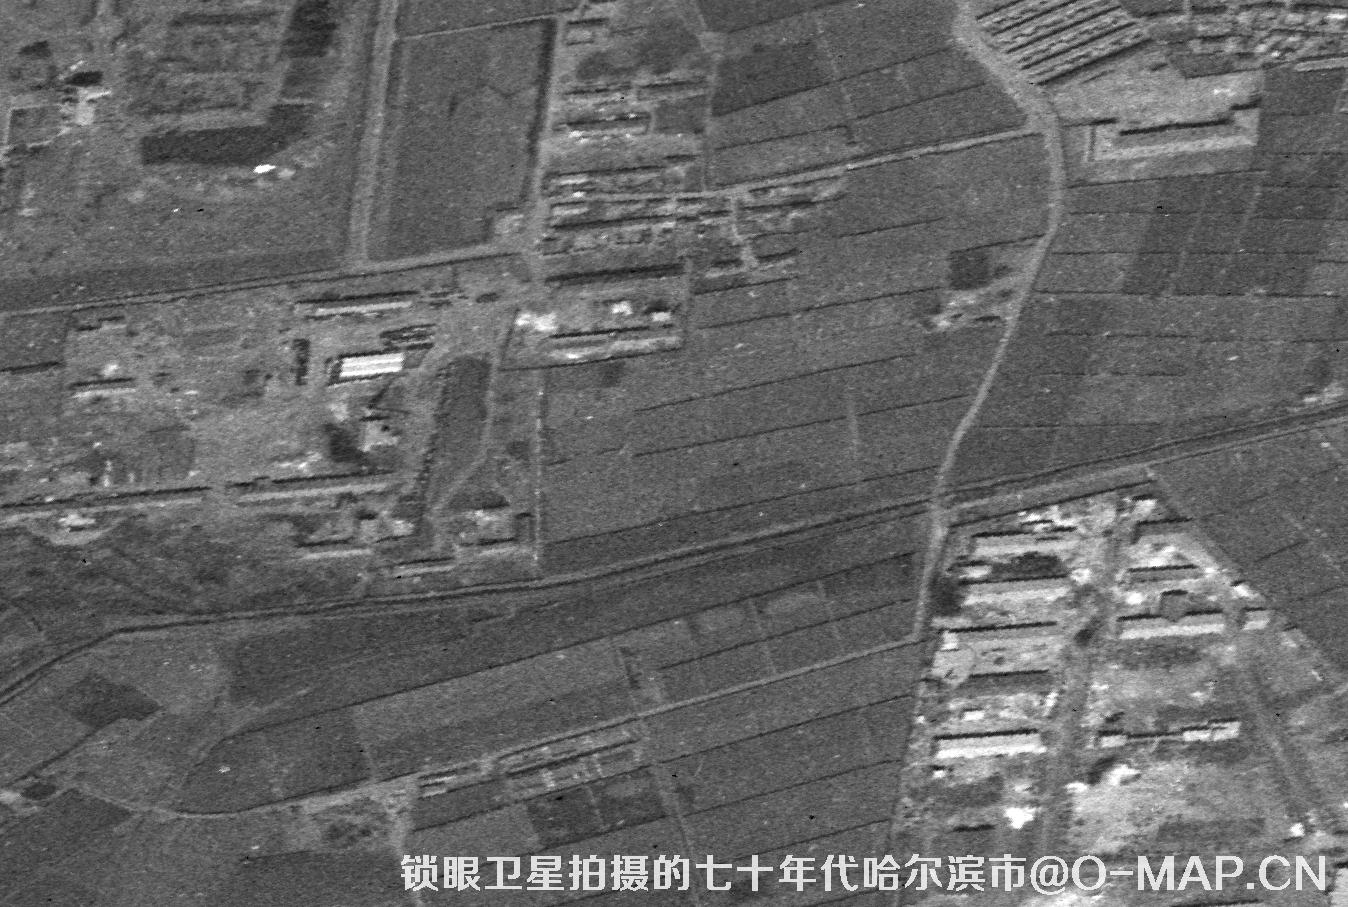 锁眼卫星拍摄的哈尔滨七十年代高清黑白卫星影像图